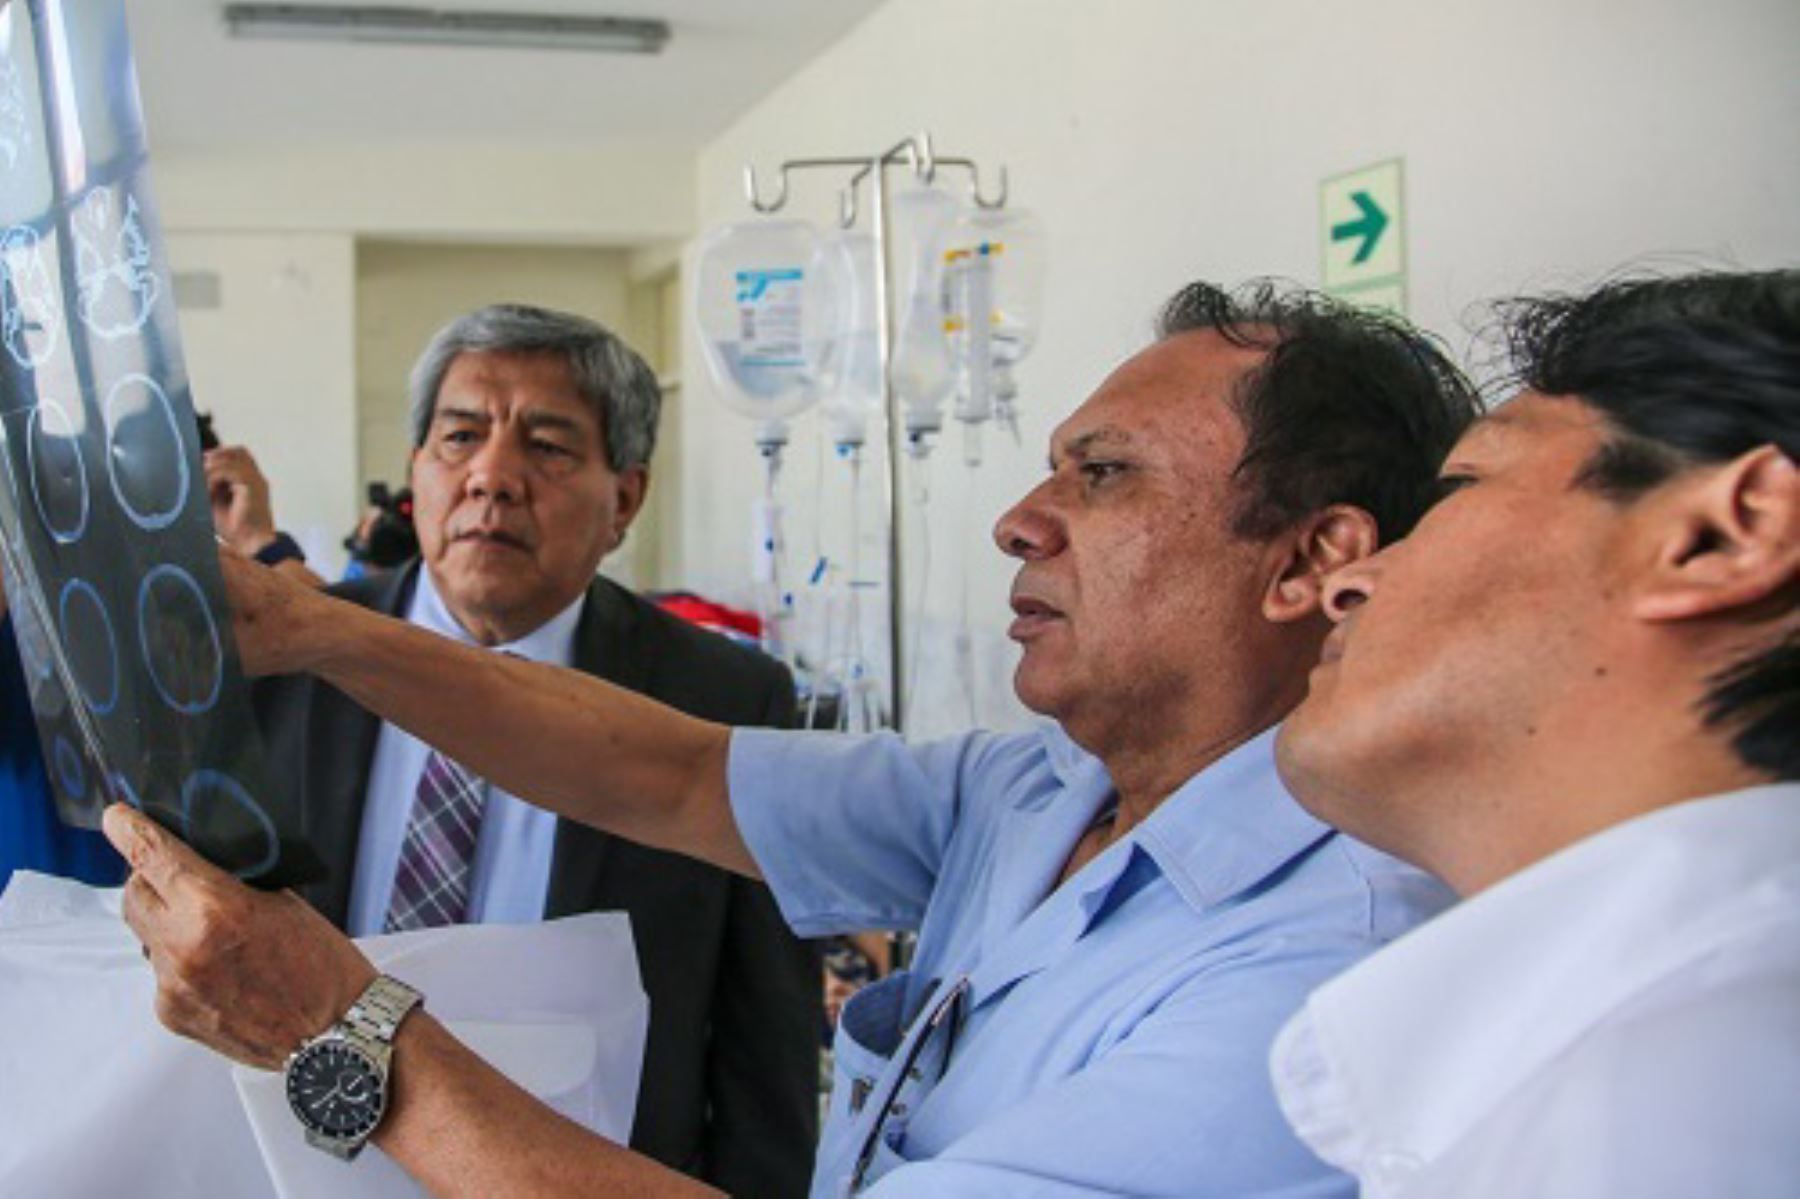 El viceministro de Salud Pública, Neptalí Santillán visitó hospitales Belén, Regional y La Noria en Trujillo donde afirmó que las Redes Integradas de Salud (RIS) fortalecerán la atención de la comunidad.